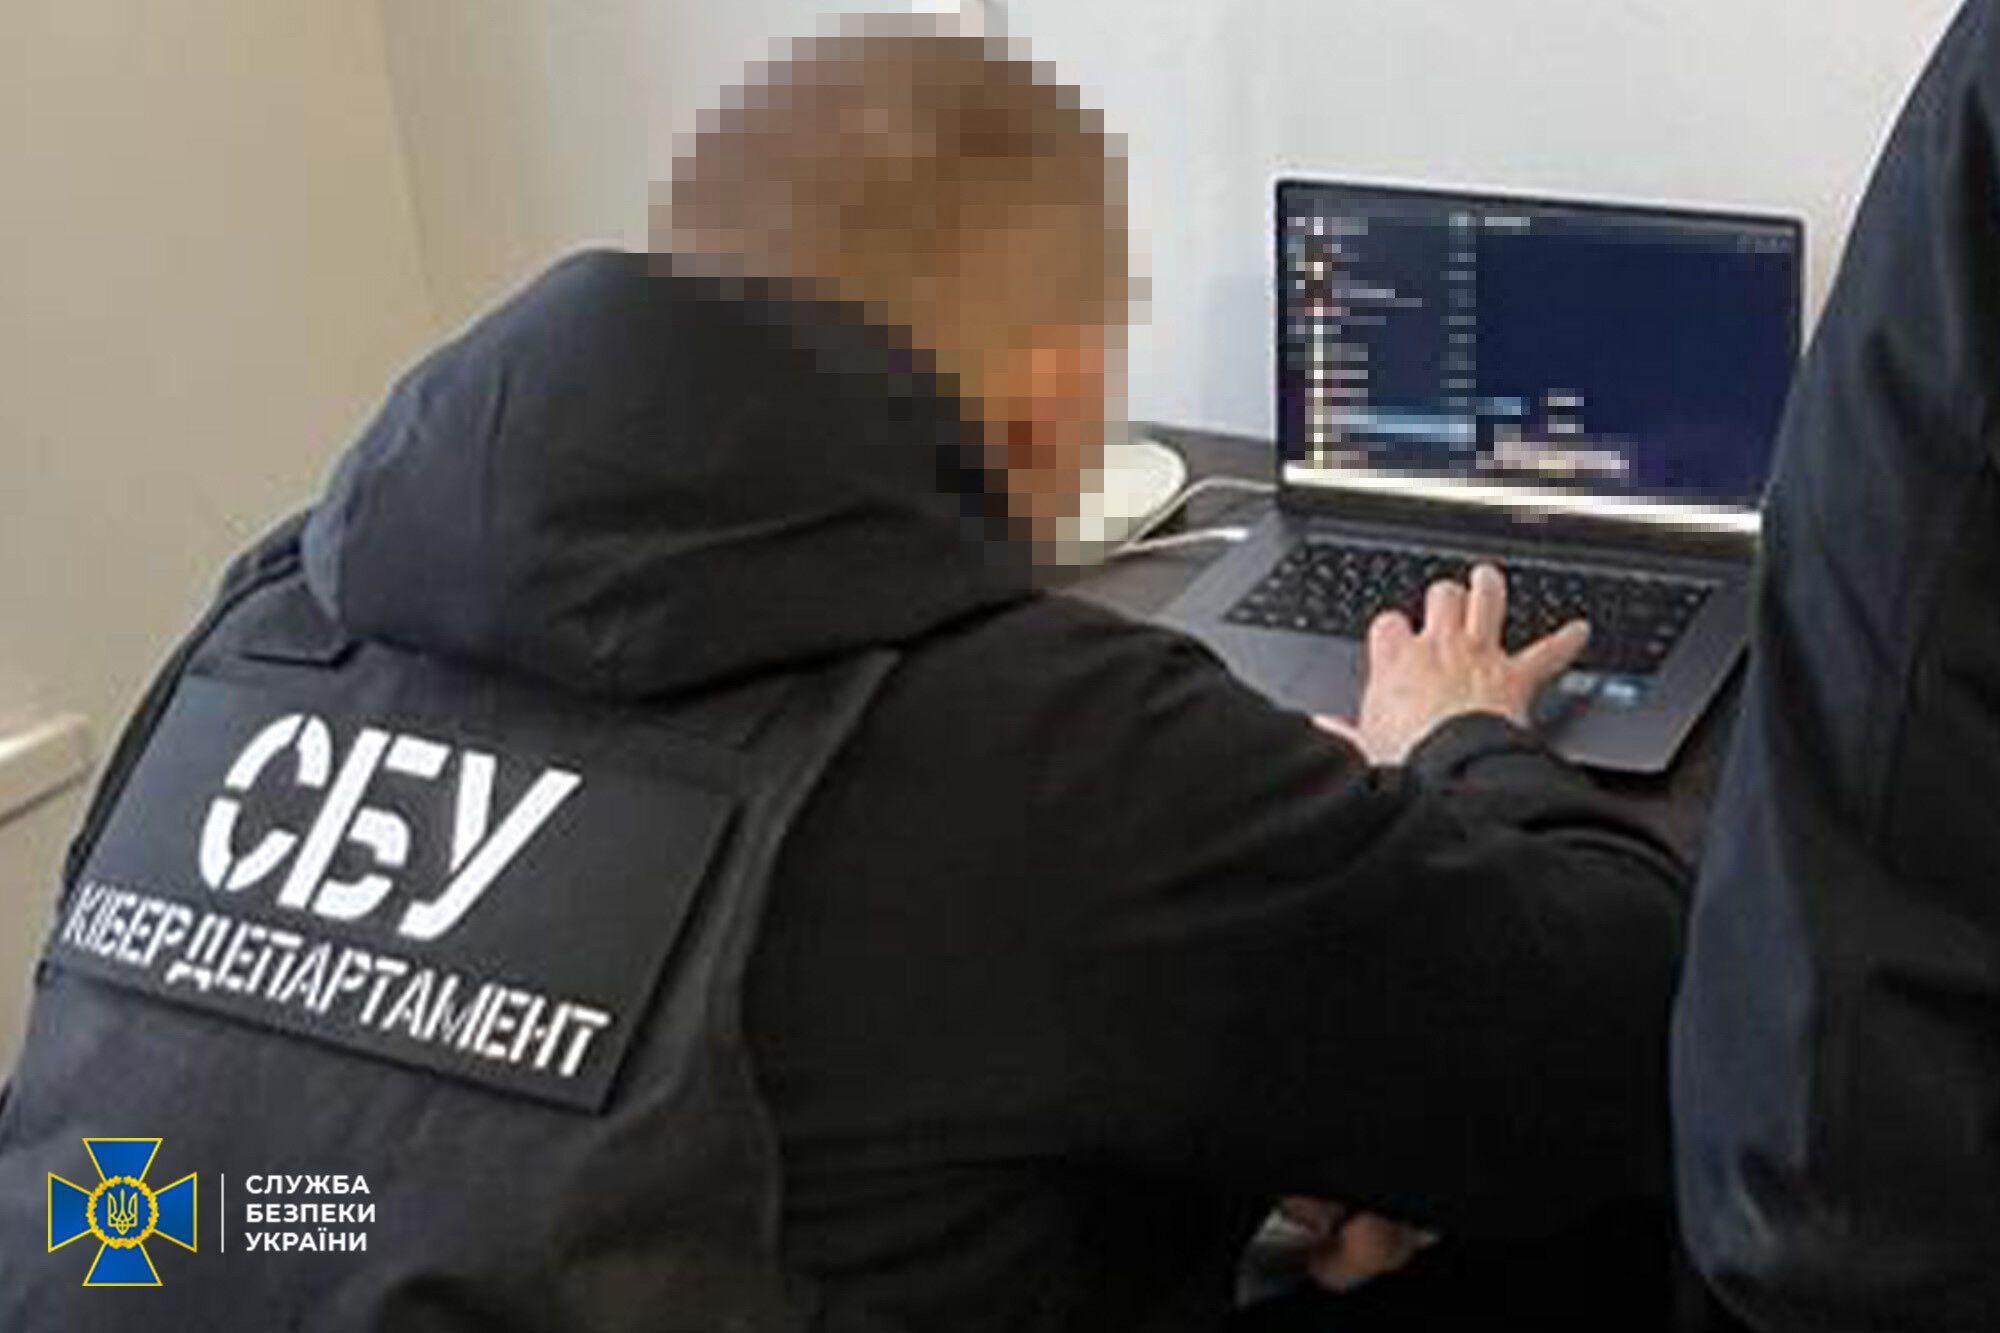 СБУ разоблачила международную сеть хакеров-вымогателей: среди участников были украинцы и россияне. Фото